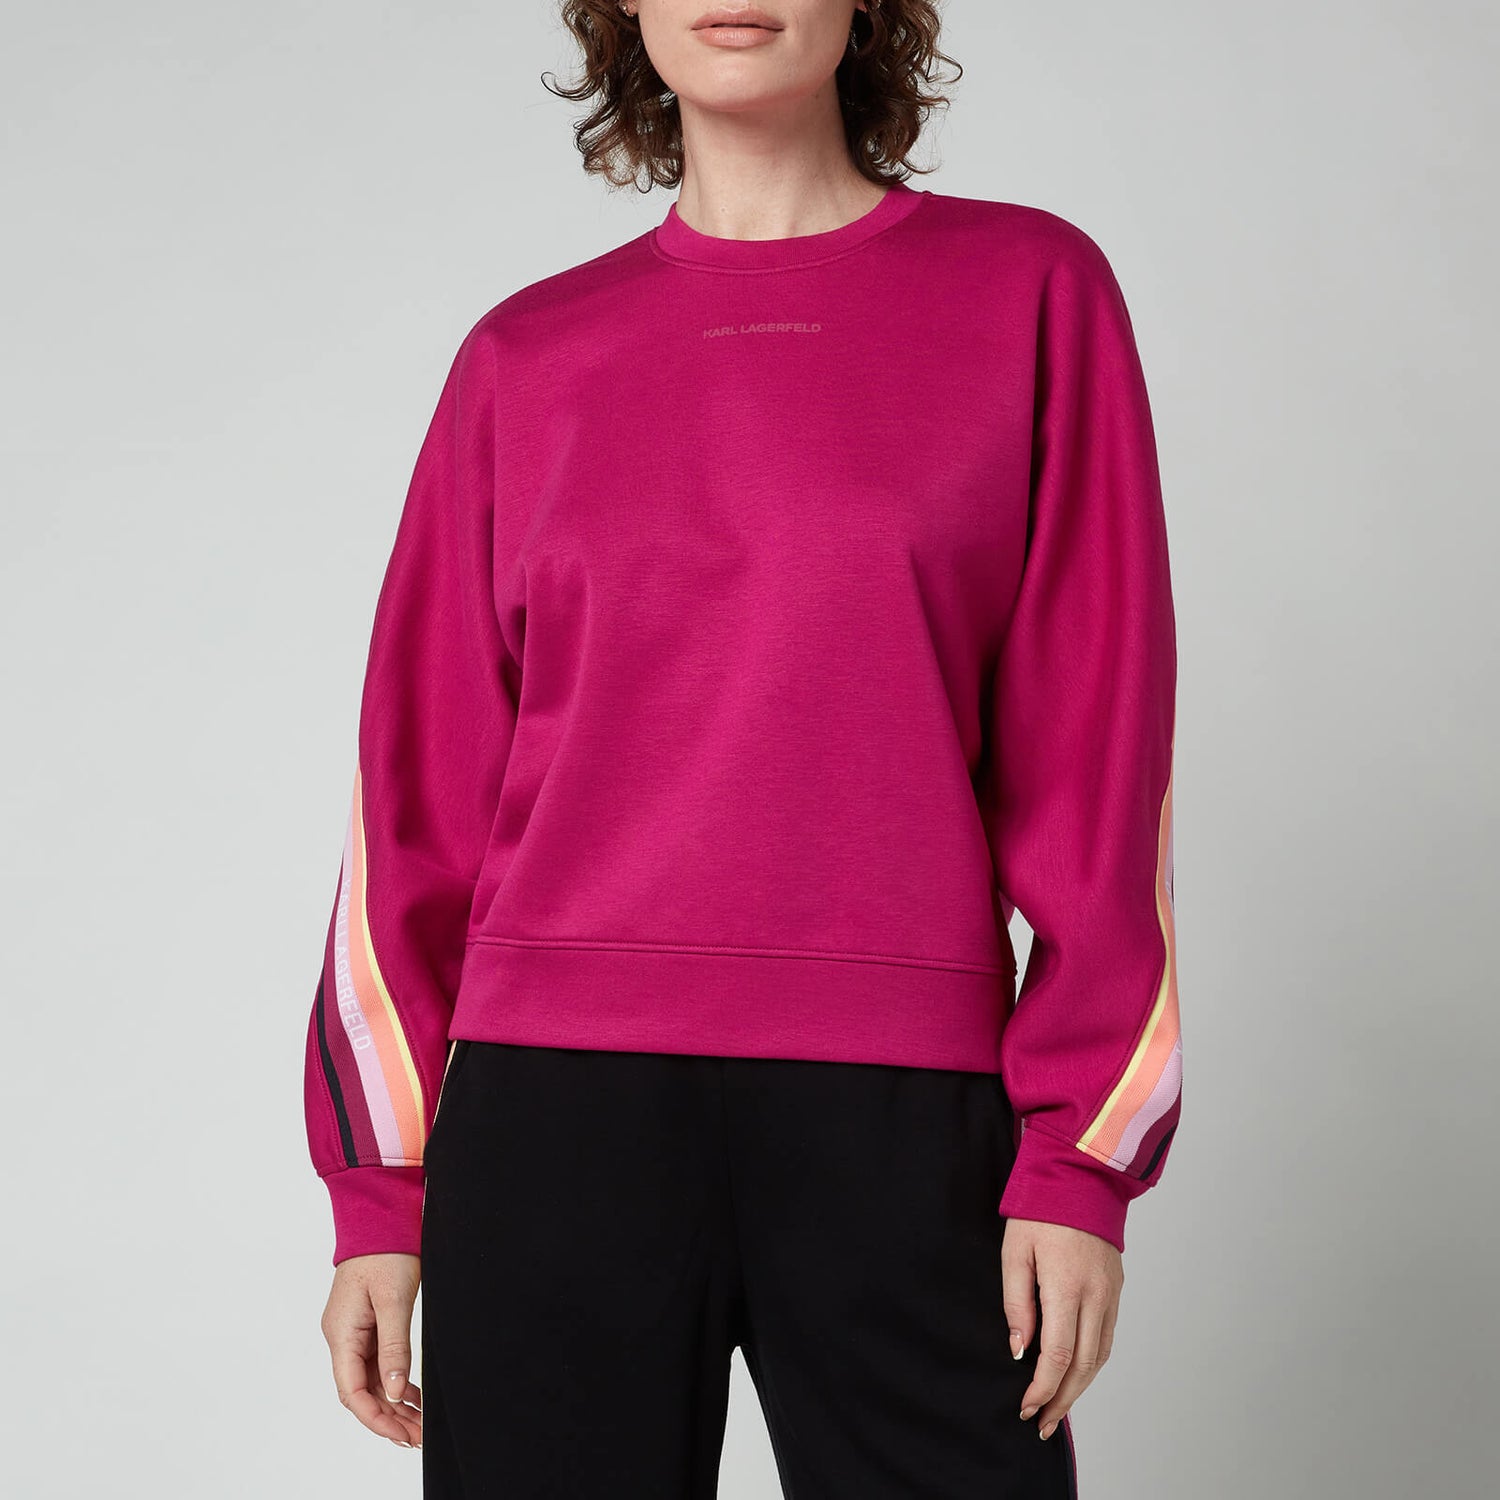 KARL LAGERFELD Women's Double Jersey Tape Sweatshirt - Fuschia